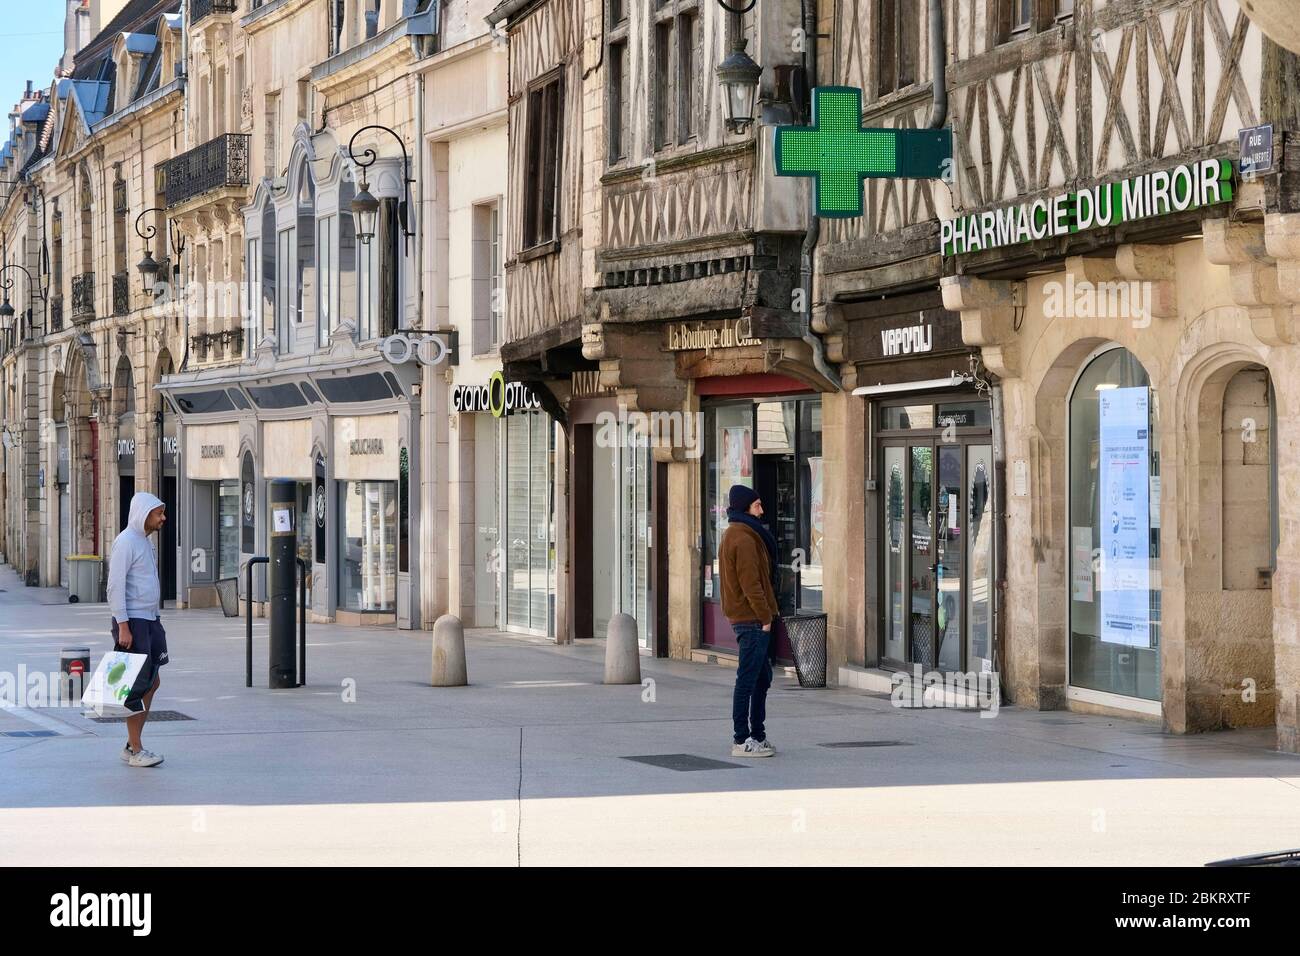 Frankreich, Cote d'Or, Dijon, COVID-19 (oder Coronavirus) Sperrung, Gebiet als Weltkulturerbe der UNESCO, Rue de la Liberte, Schlange vor einer Apotheke unter Wahrung der sozialen Distanz Stockfoto